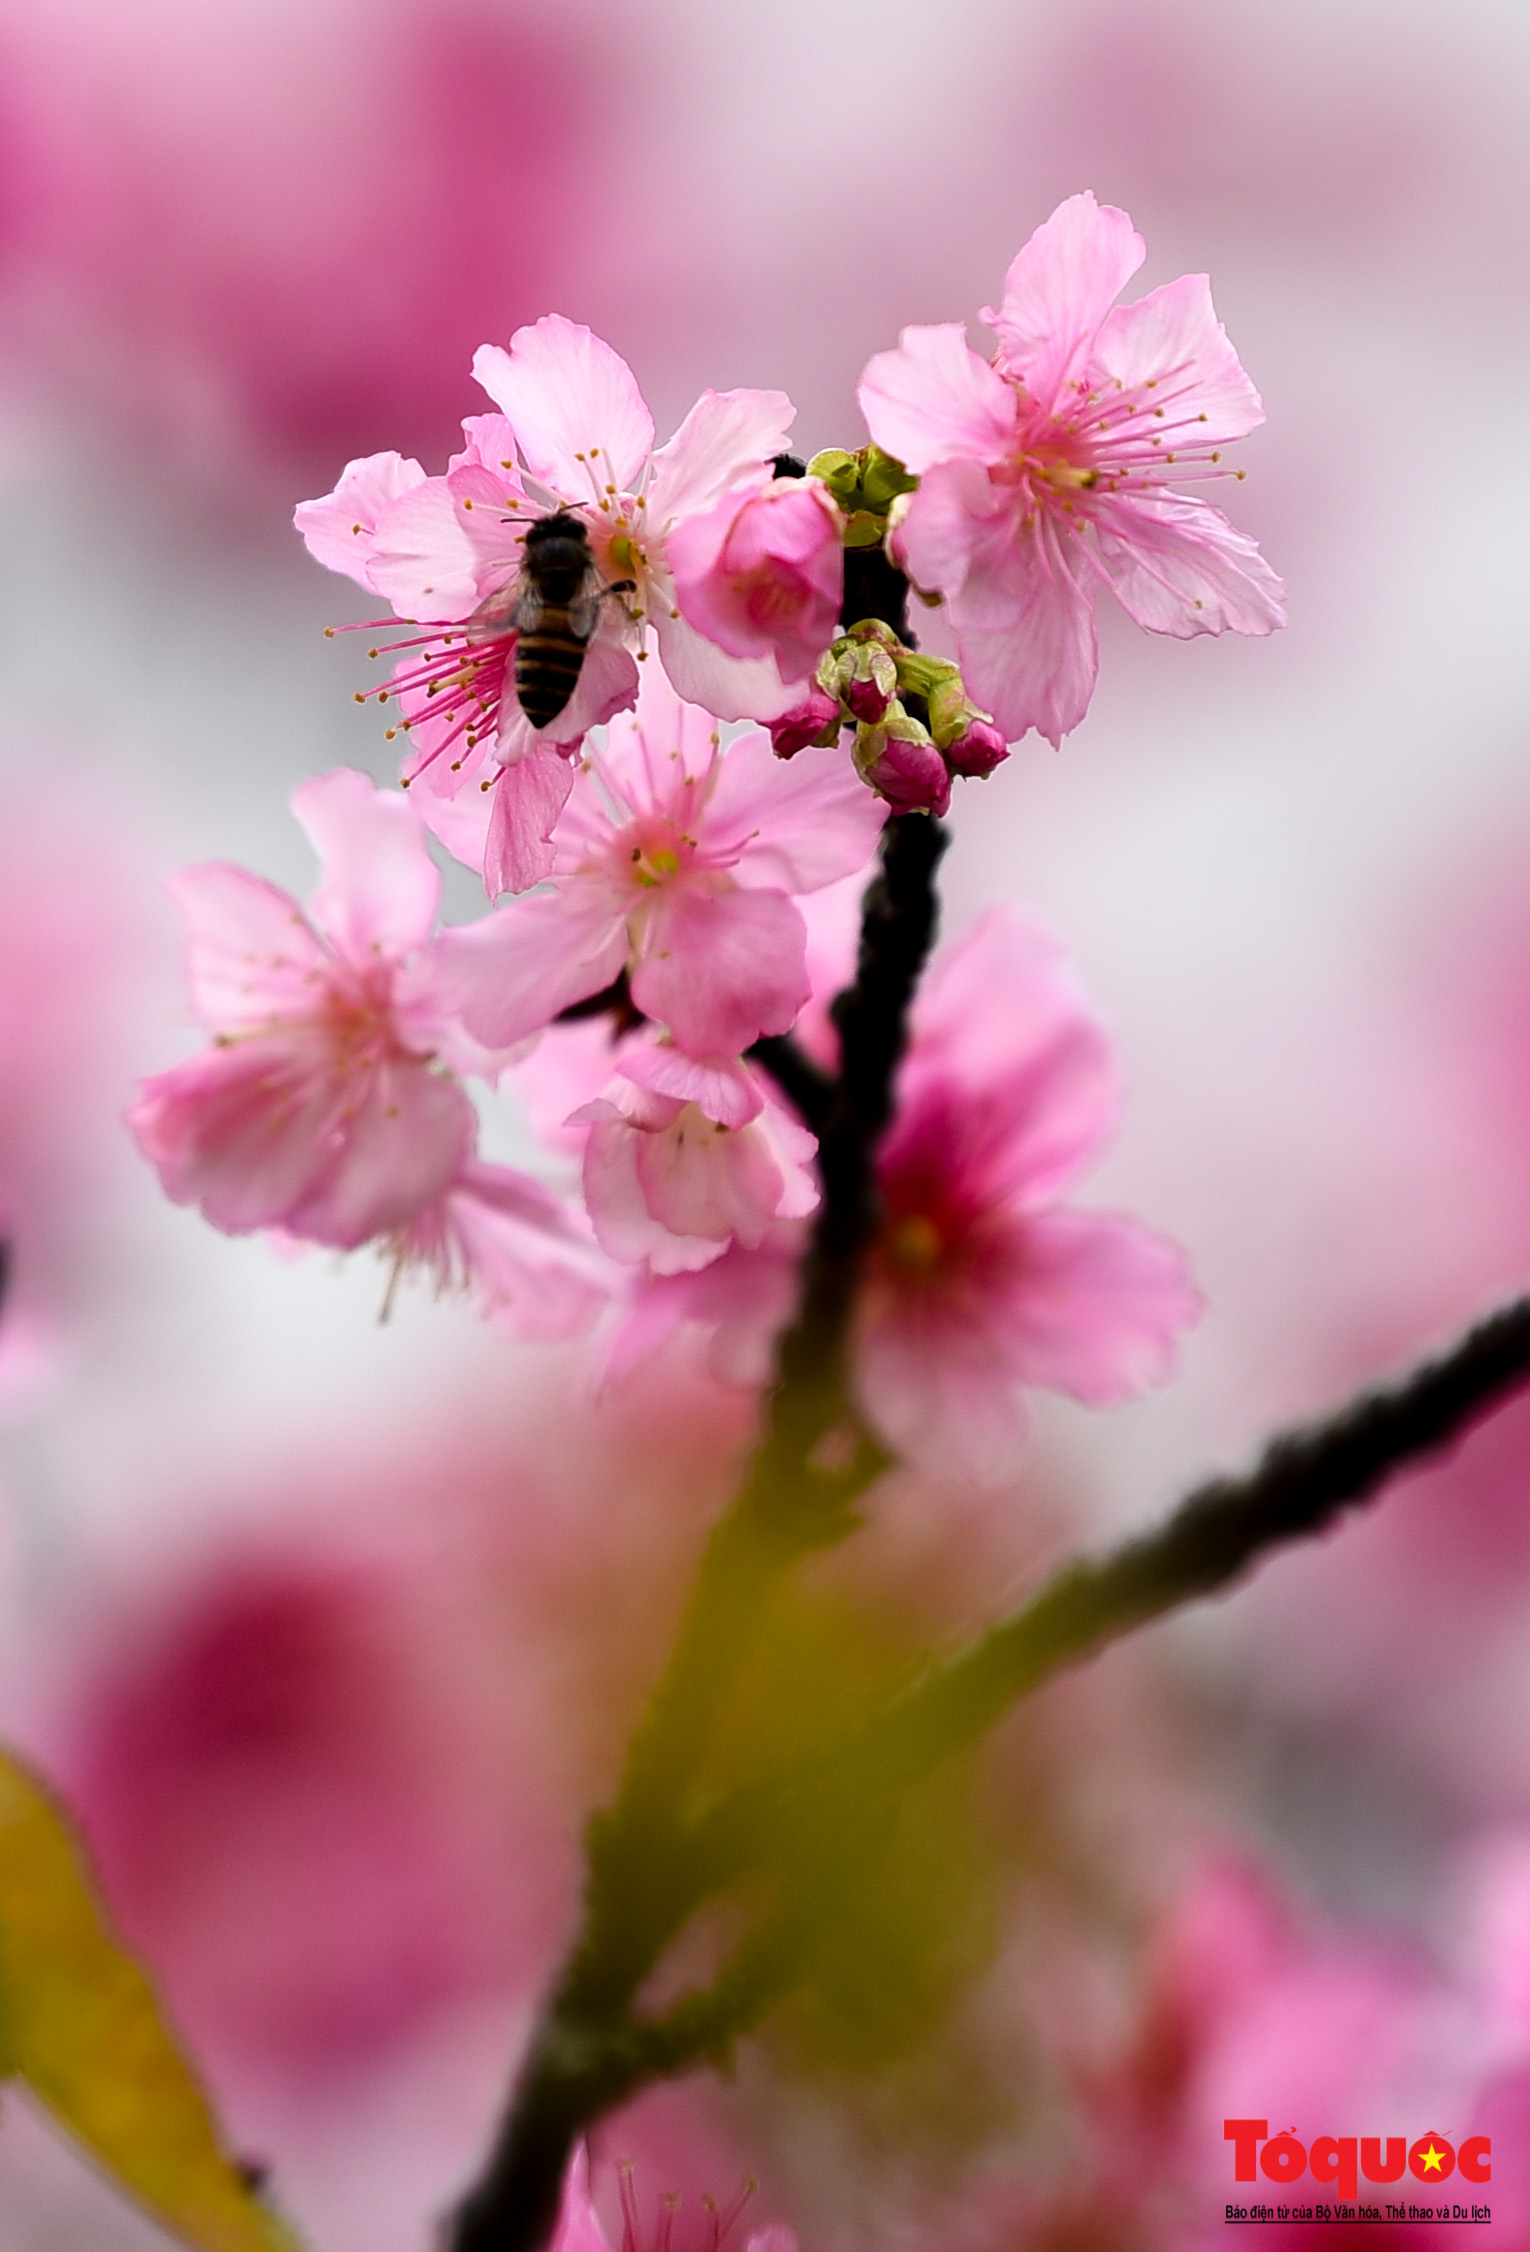 HOA ANH ĐÀO NHẬT BẢN Ảnh tuyệt đẹp về hoa anh đào Nhật